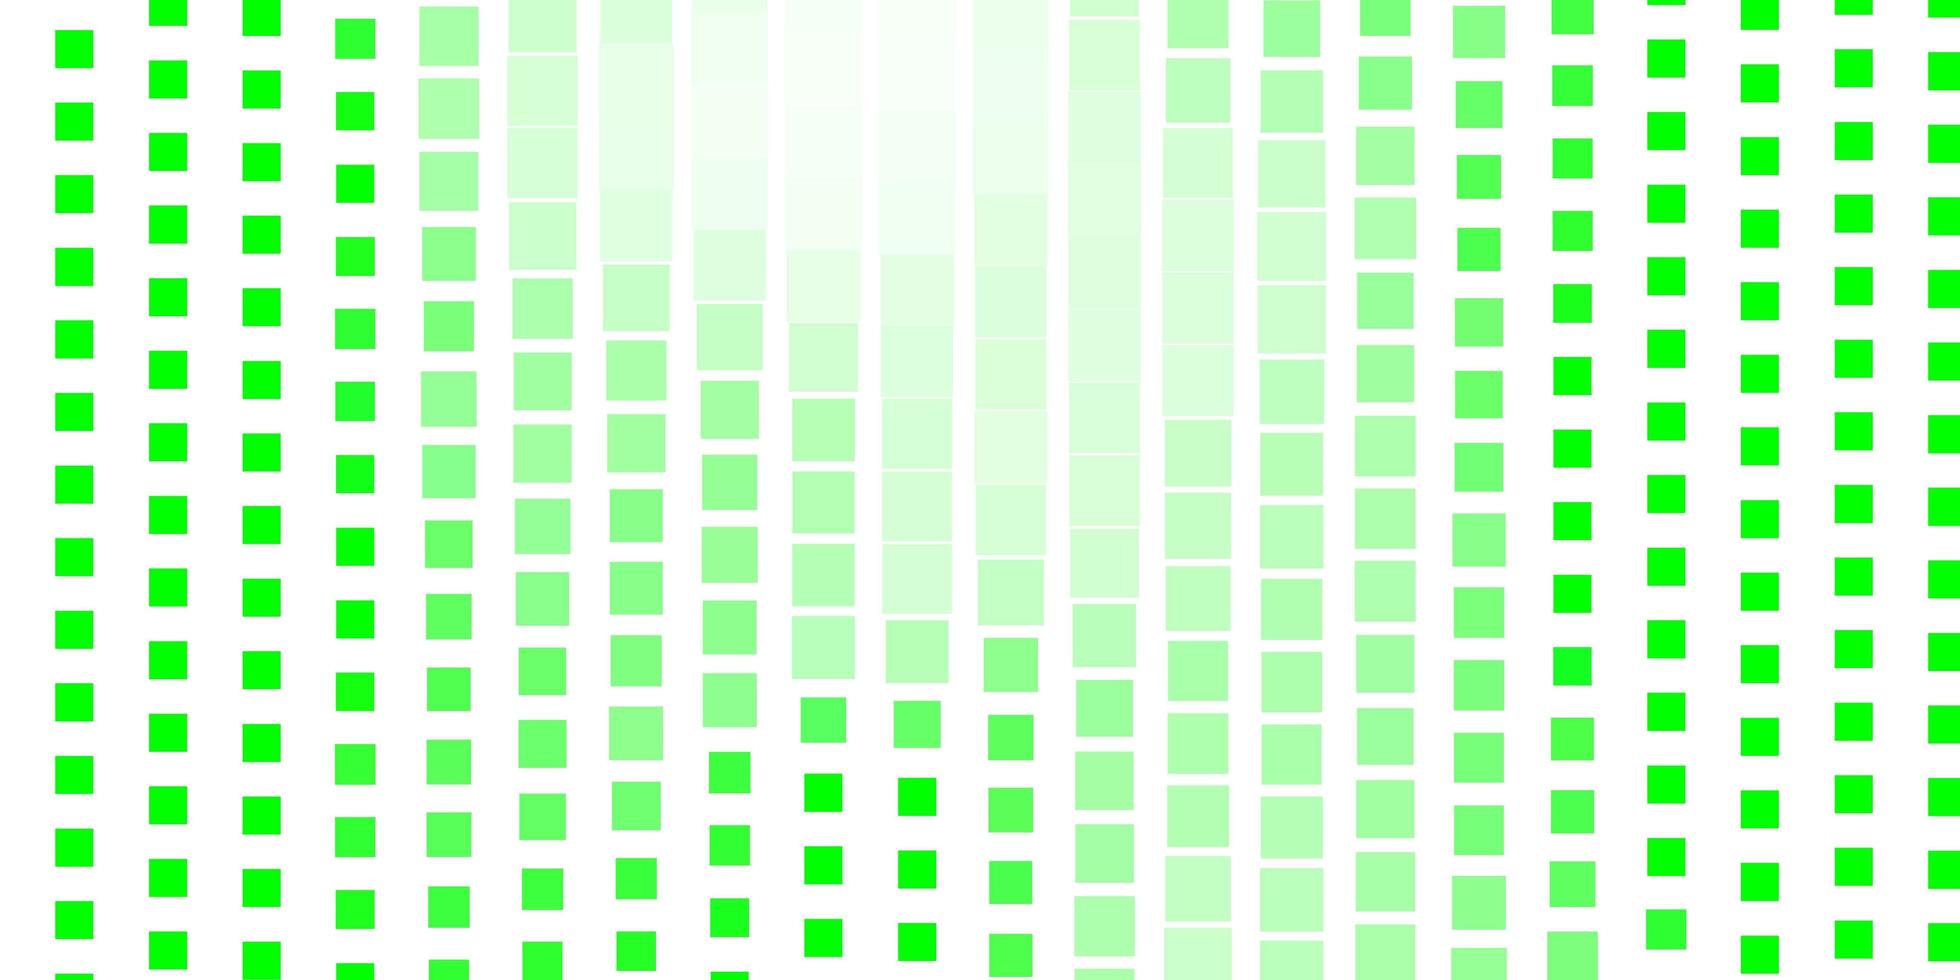 toile de fond de vecteur vert clair avec des rectangles. illustration abstraite de dégradé avec des rectangles. modèle moderne pour votre page de destination.